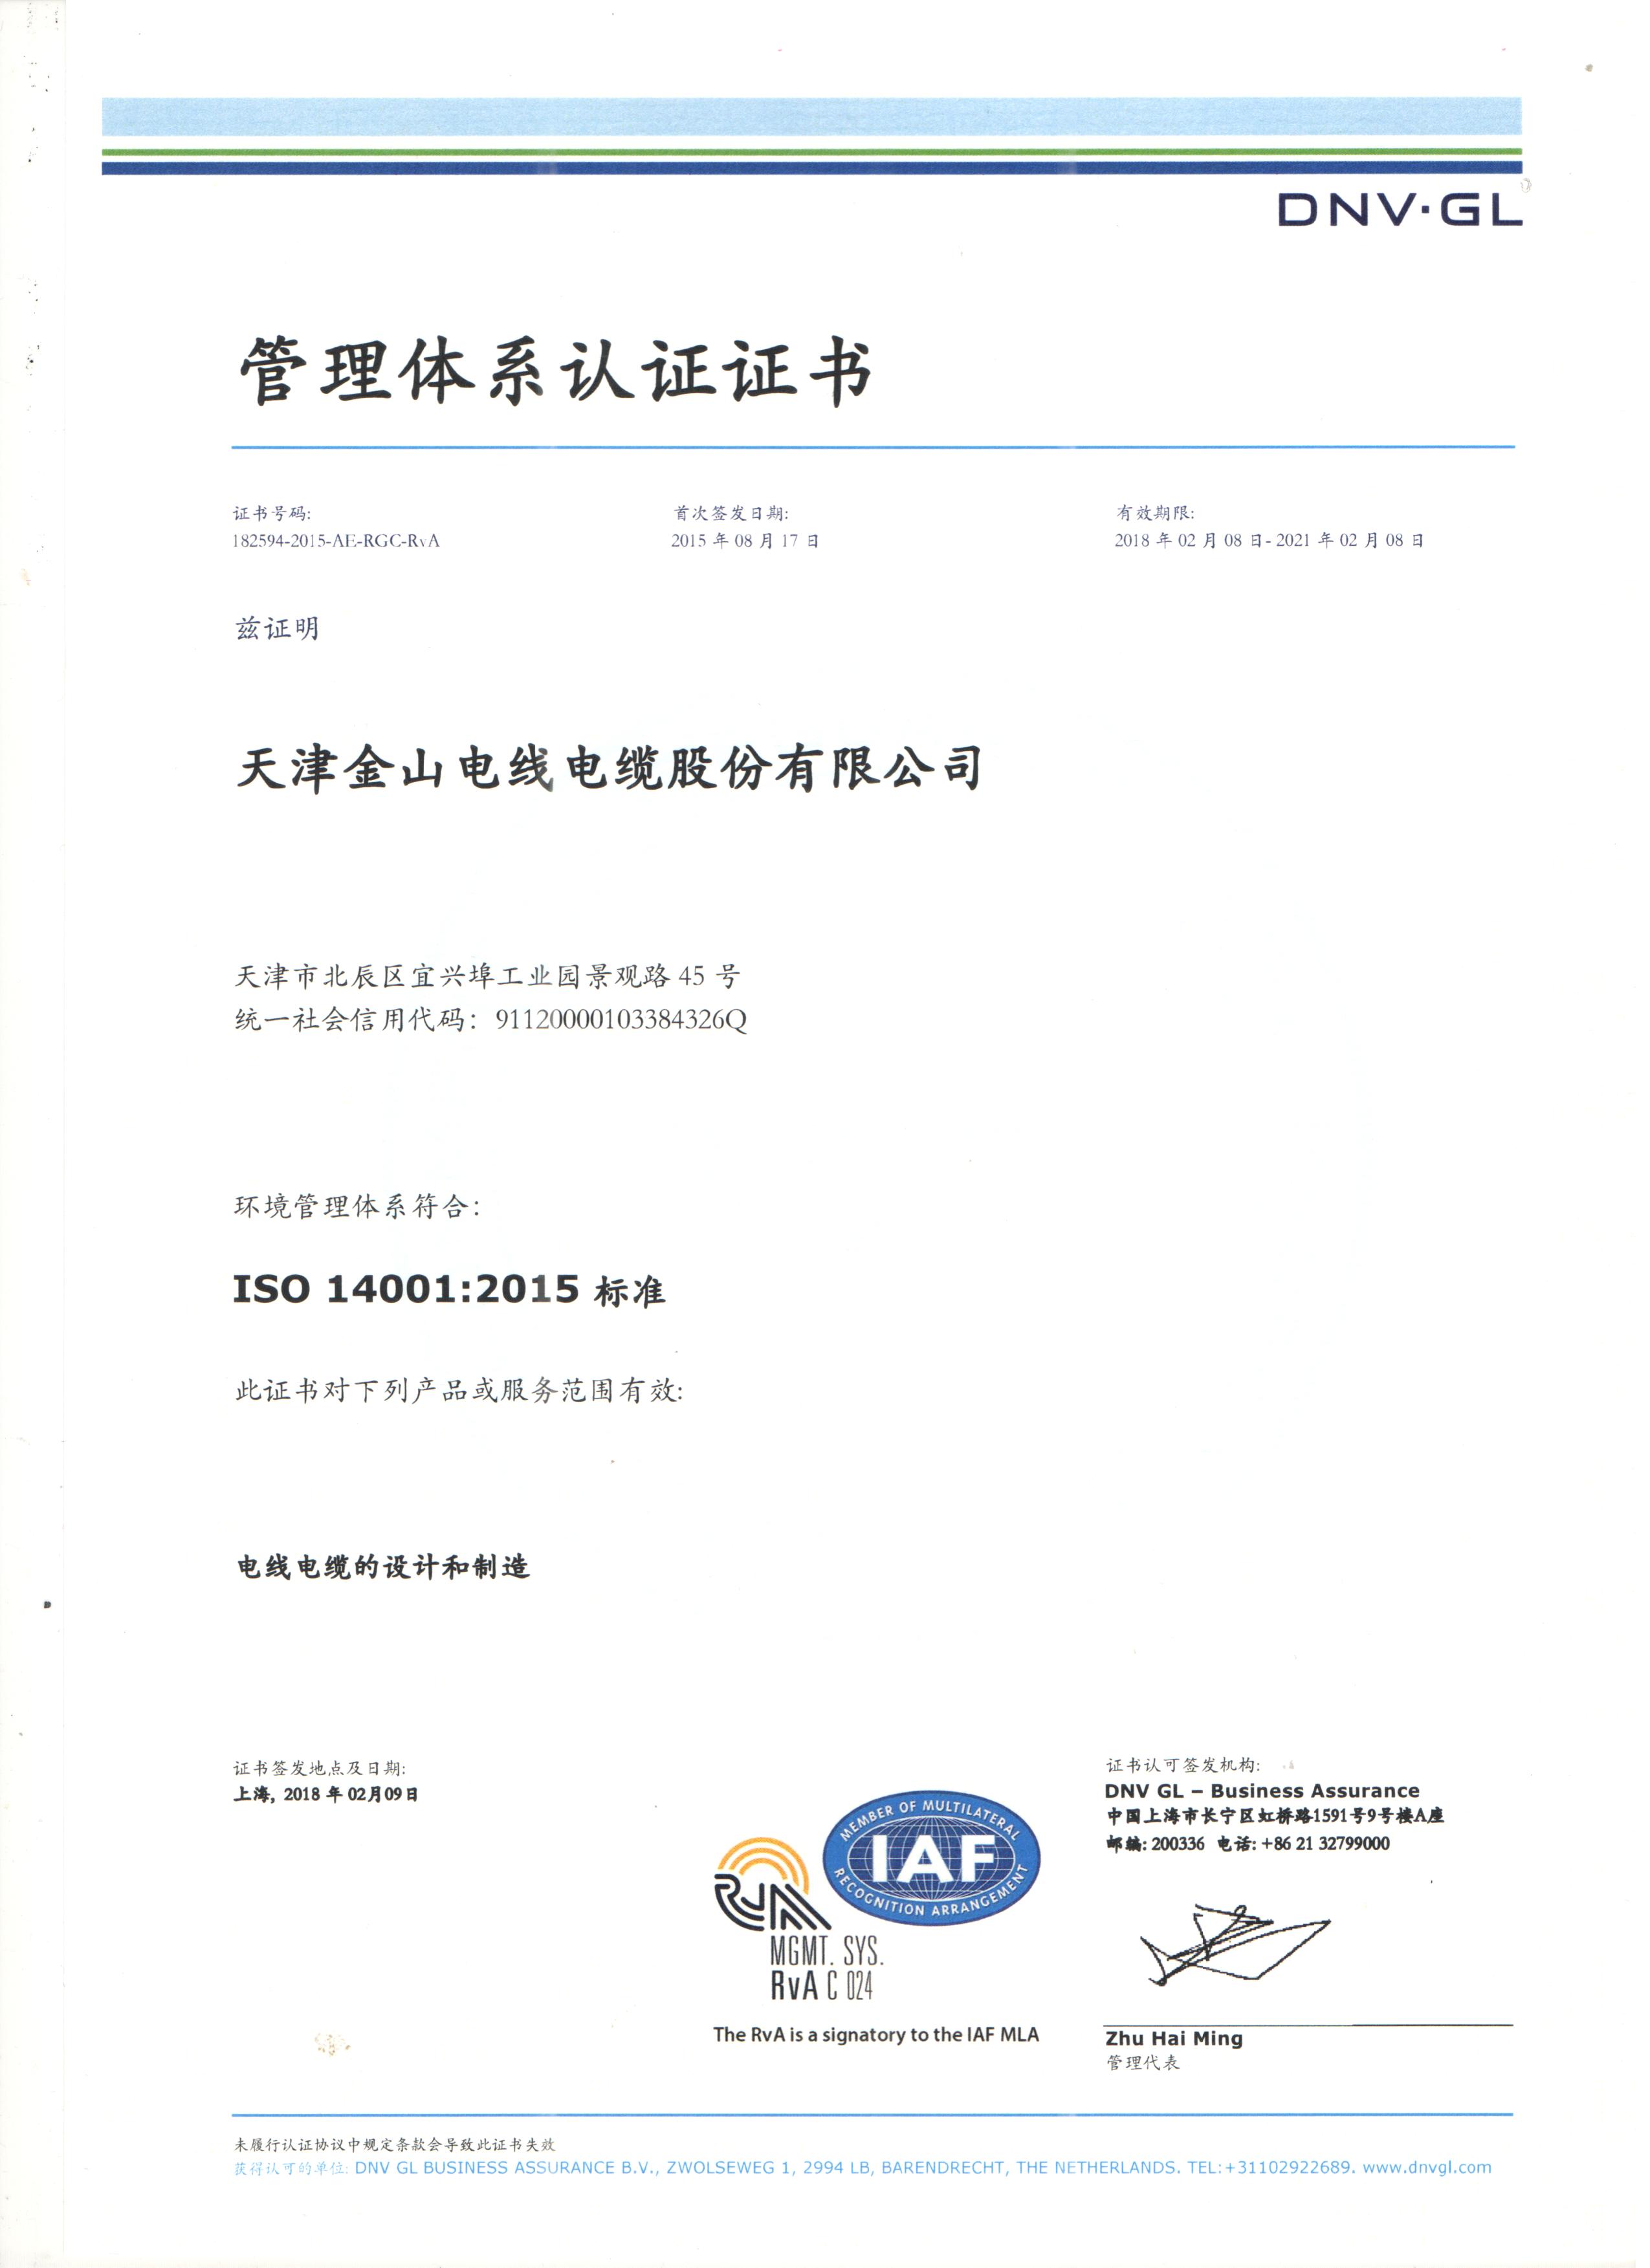 14001国际质量管理体系认证